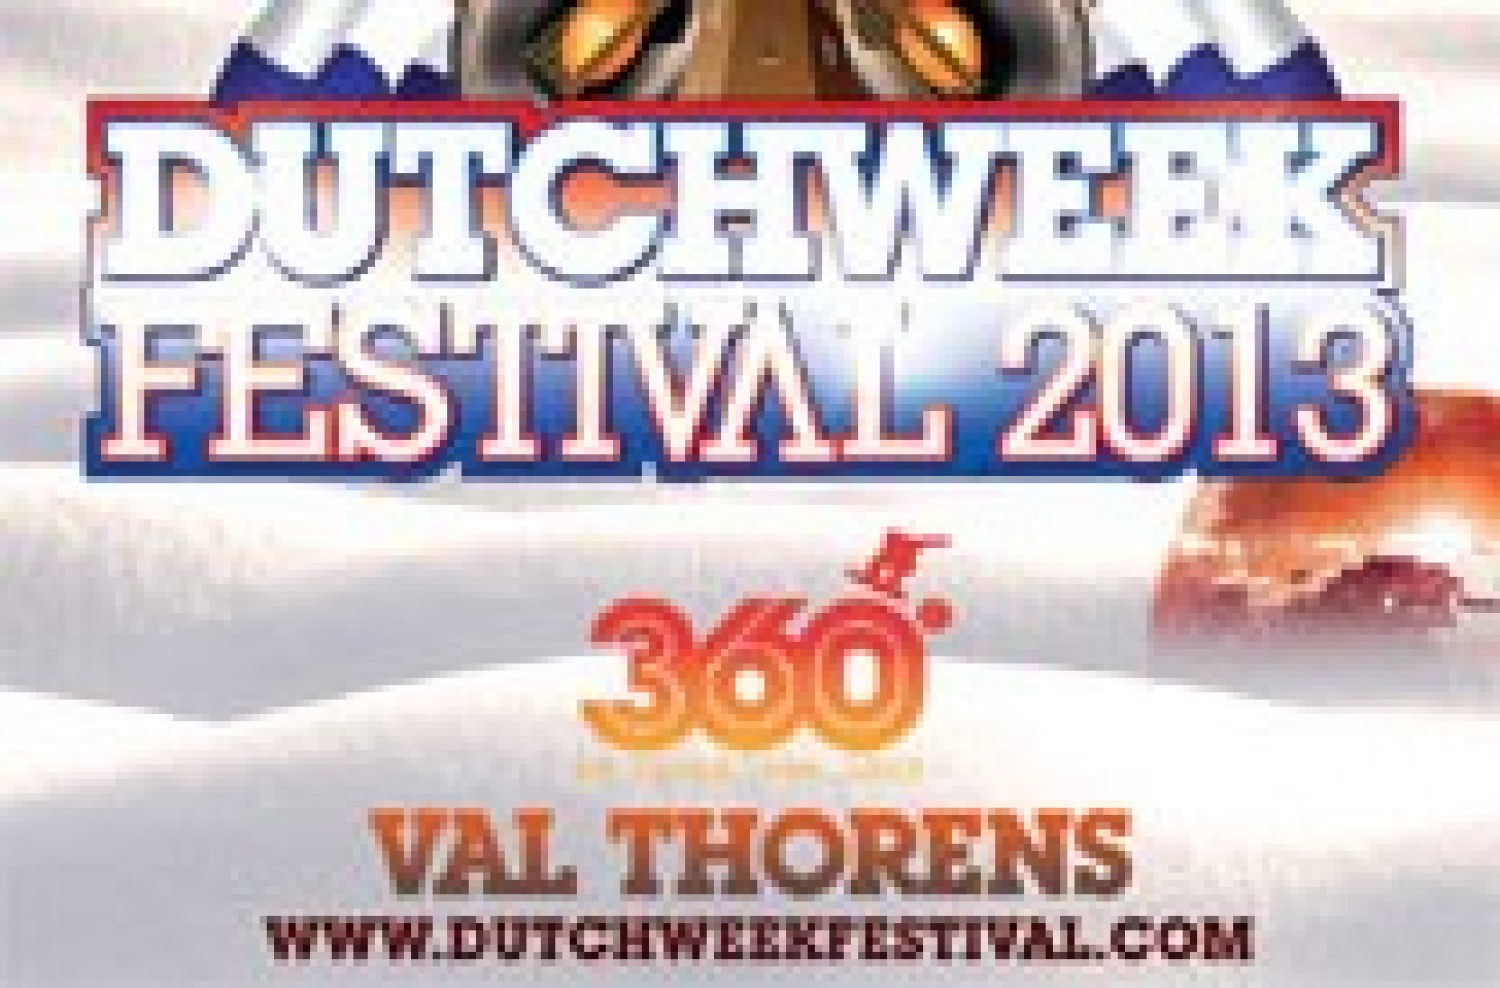 Party nieuws: Dutchweek Festival – Val Thorens – 27 April t/m 03 Mei